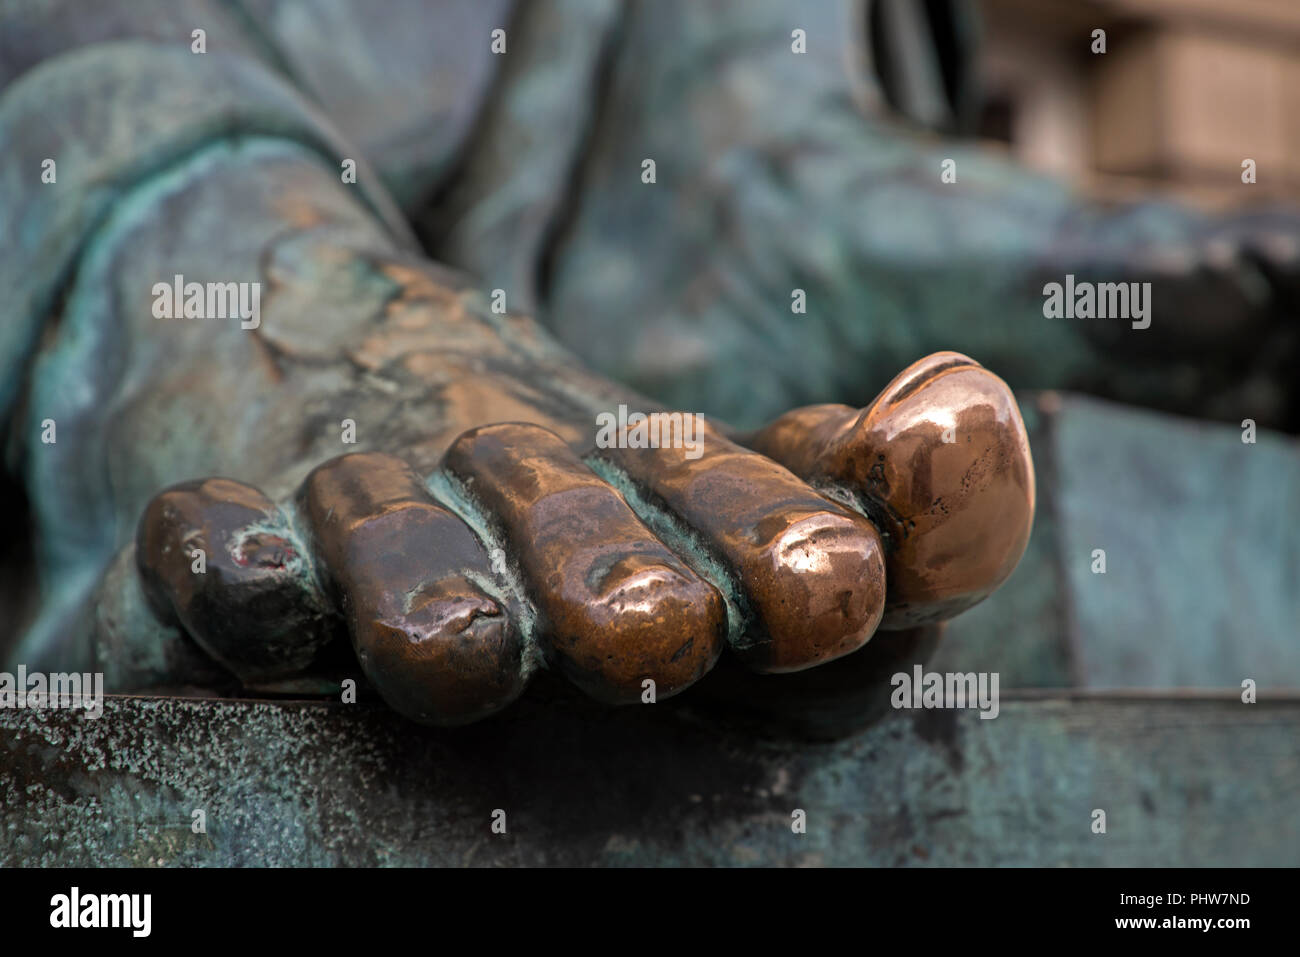 Les orteils sur la statue du philosophe David Hume sur la High Street à Édimbourg, polie par les passants et touristes qui y toucher pour la bonne chance. Banque D'Images